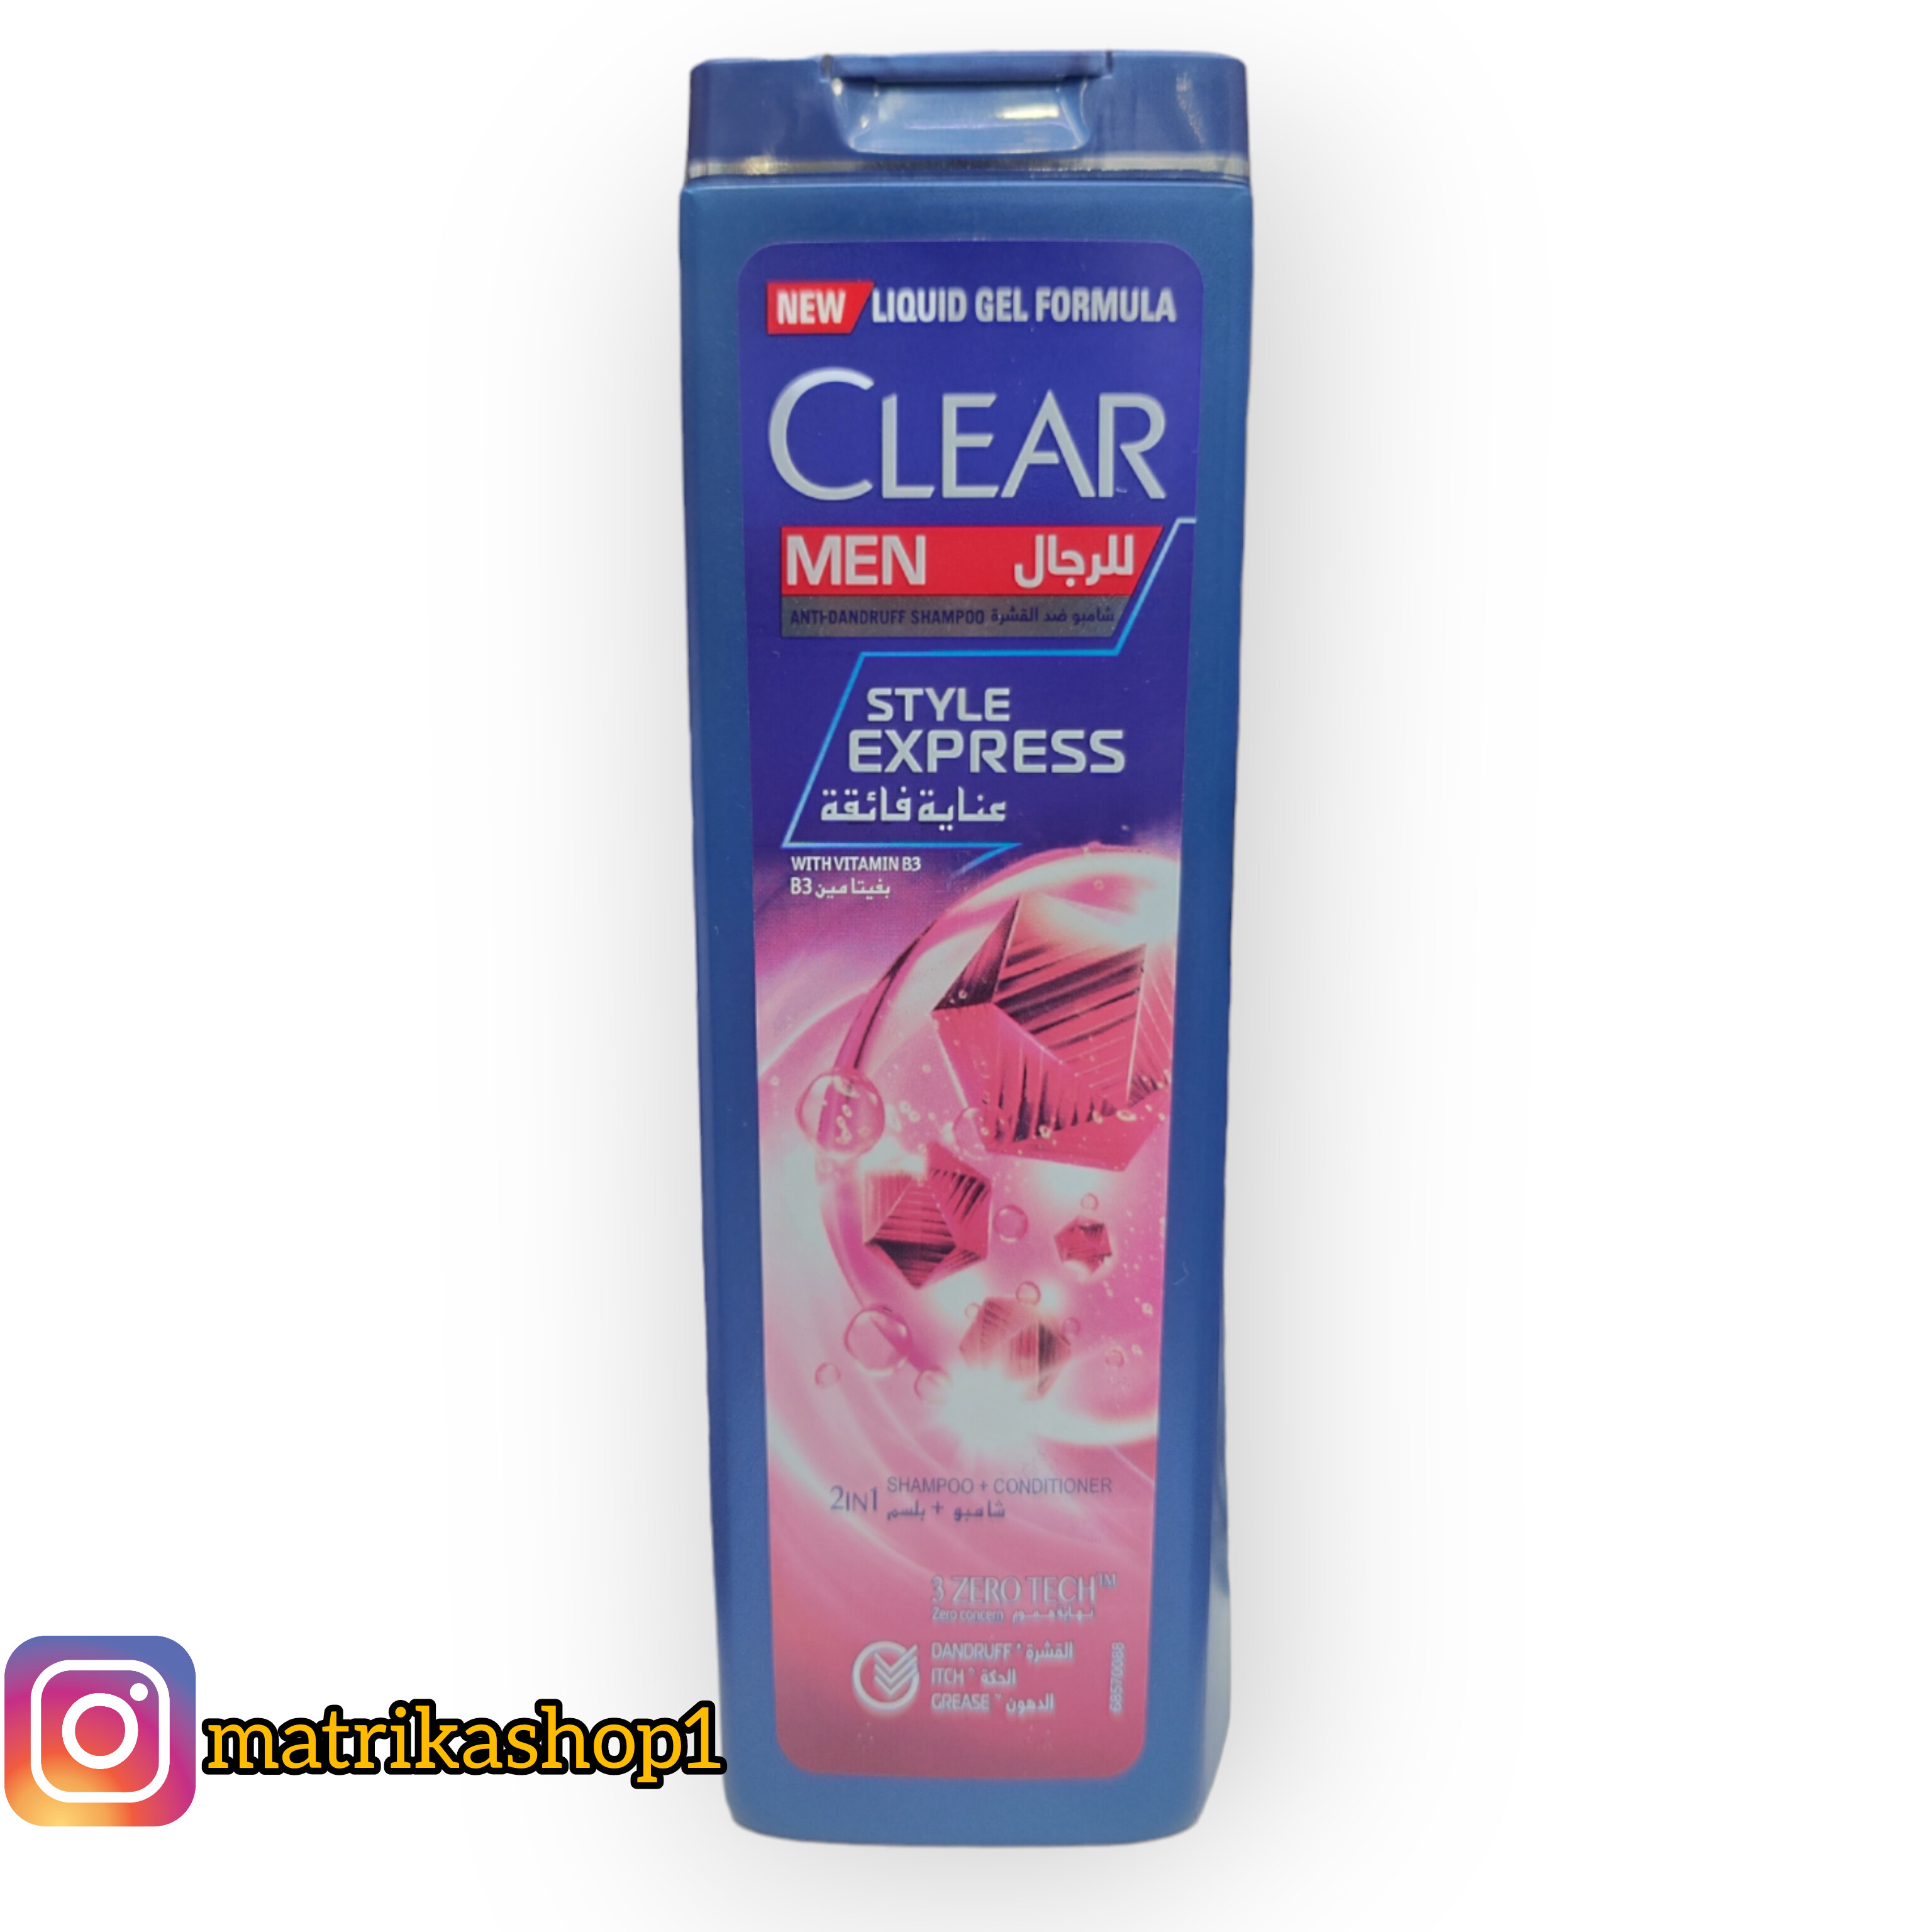 شامپو ضد شوره کلیر عربی مدل استایل اکسپرس 400 میل ا Clear Men Anti Dandruf Style Express Shampoo 400ml